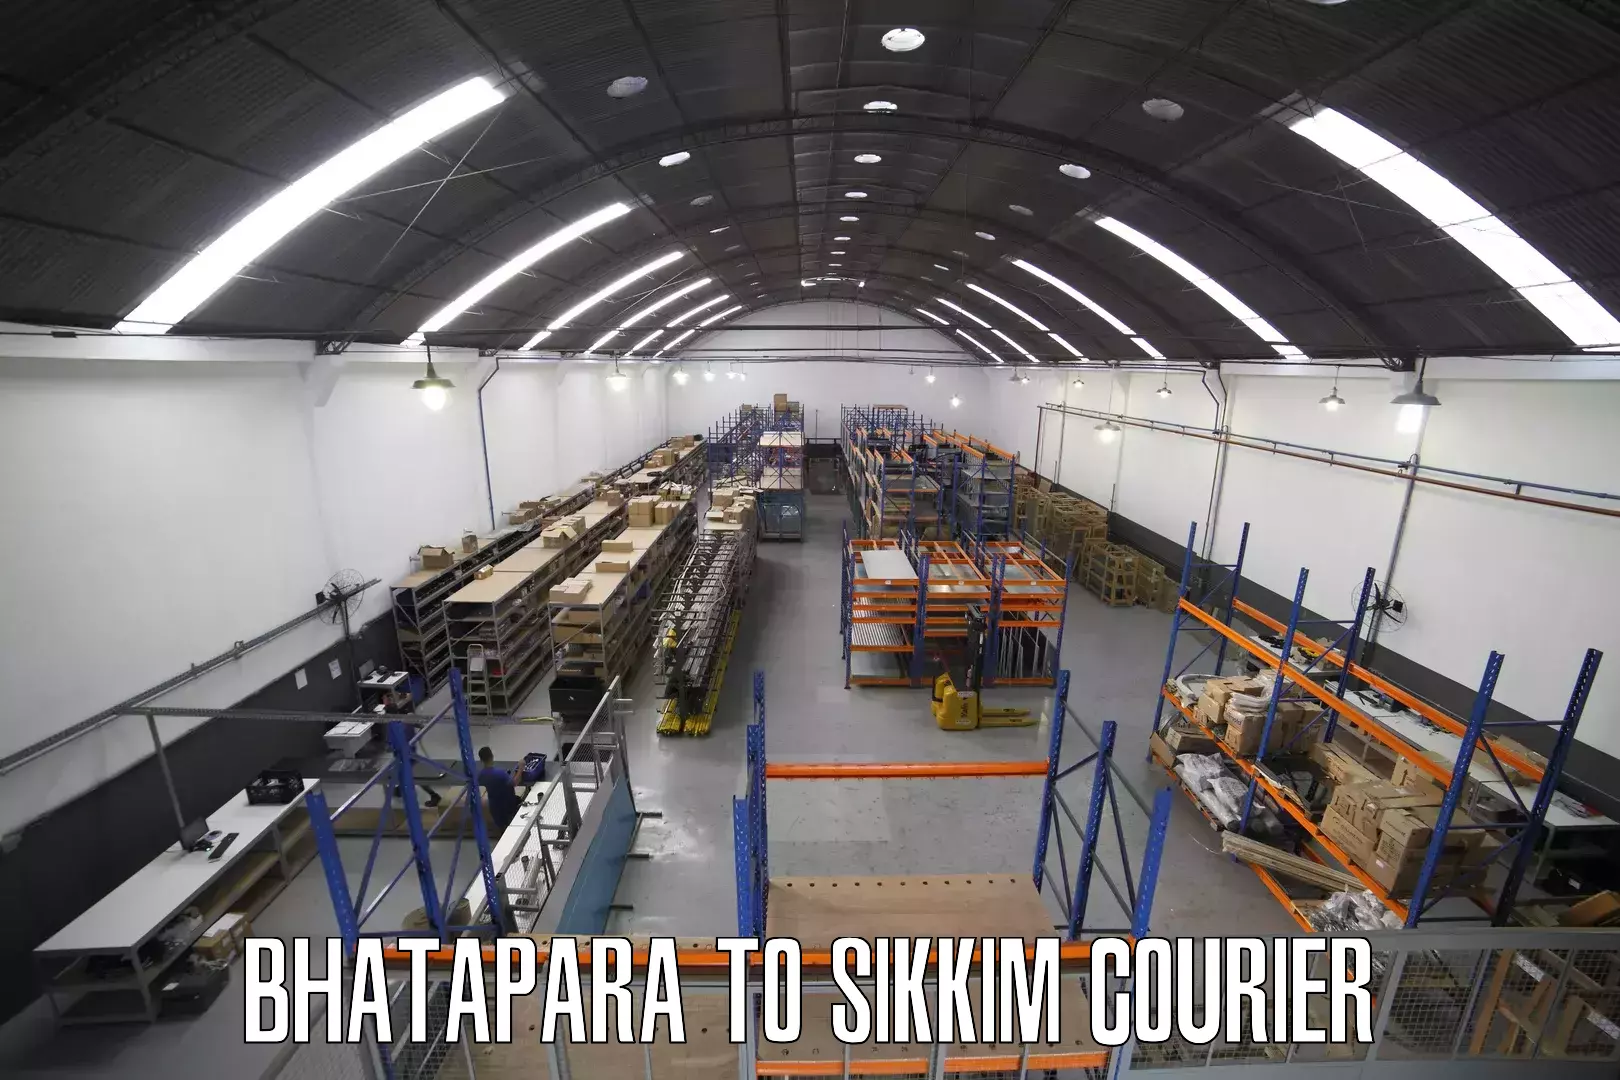 Custom courier solutions Bhatapara to Jorethang